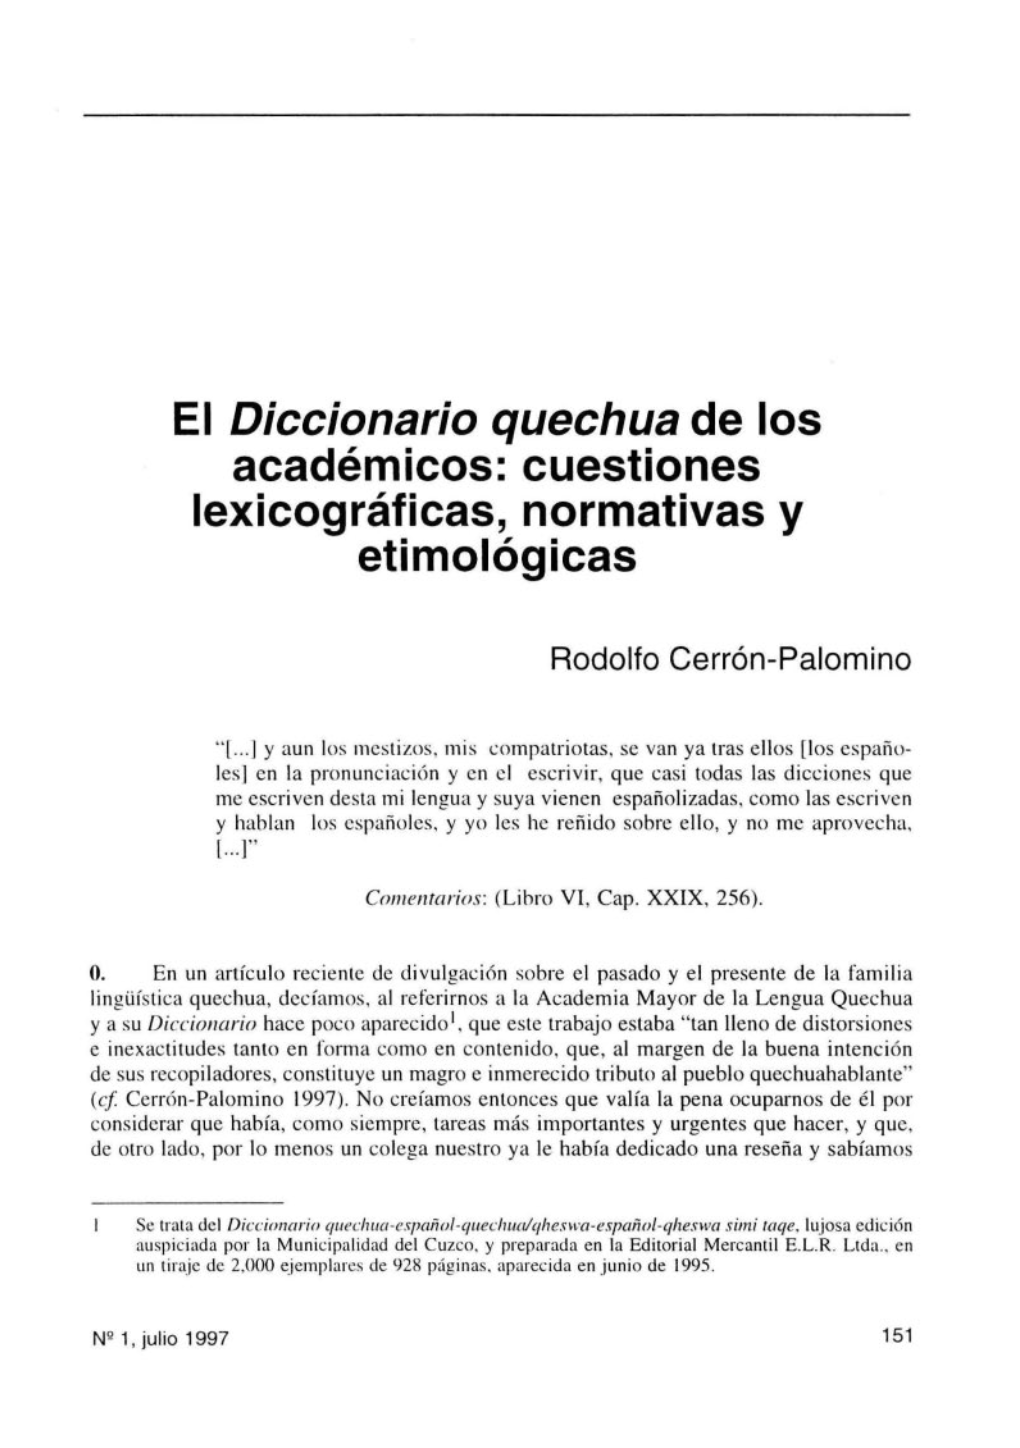 El Diccionario Quechua De Los Académicos: Cuestiones Lexicográficas, Normativas Y Etimológicas